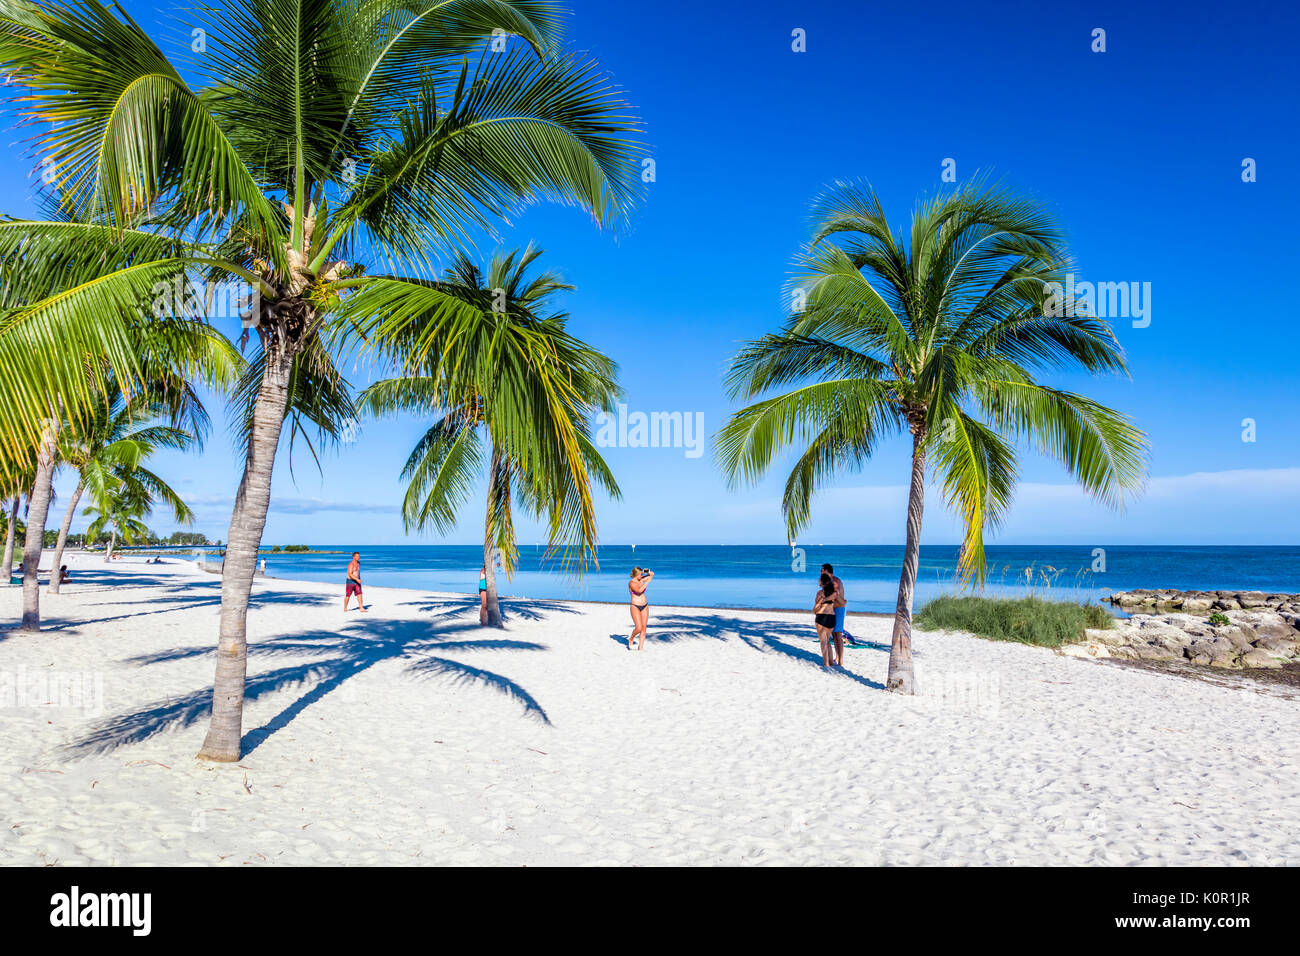 Palmen und Menschen auf sandigen Smathers Beach am Atlantischen Ozean in Key West Florida auf einem blauen Himmel Sommer Tag Stockfoto